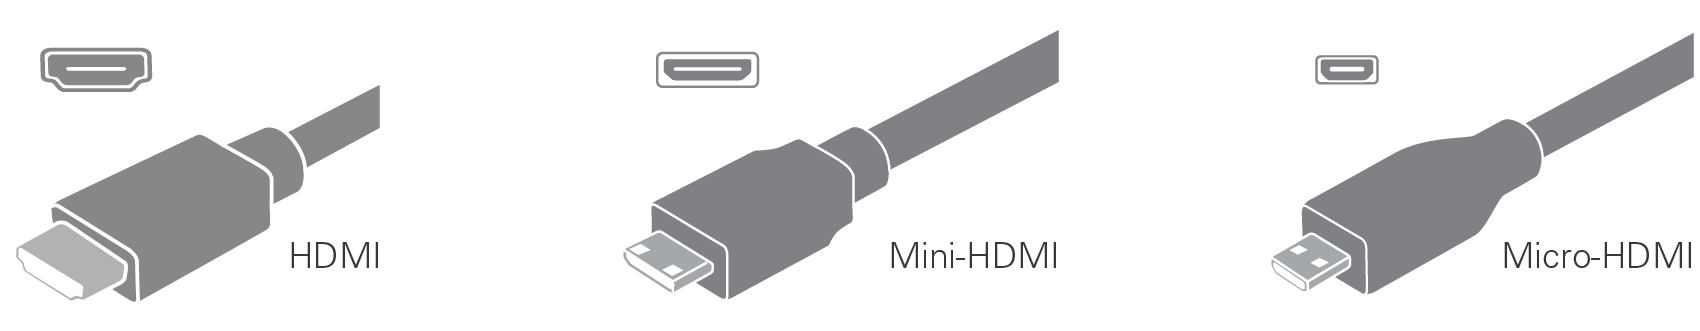 Ødelægge bede snatch HDMI-kabler | Kjell.com